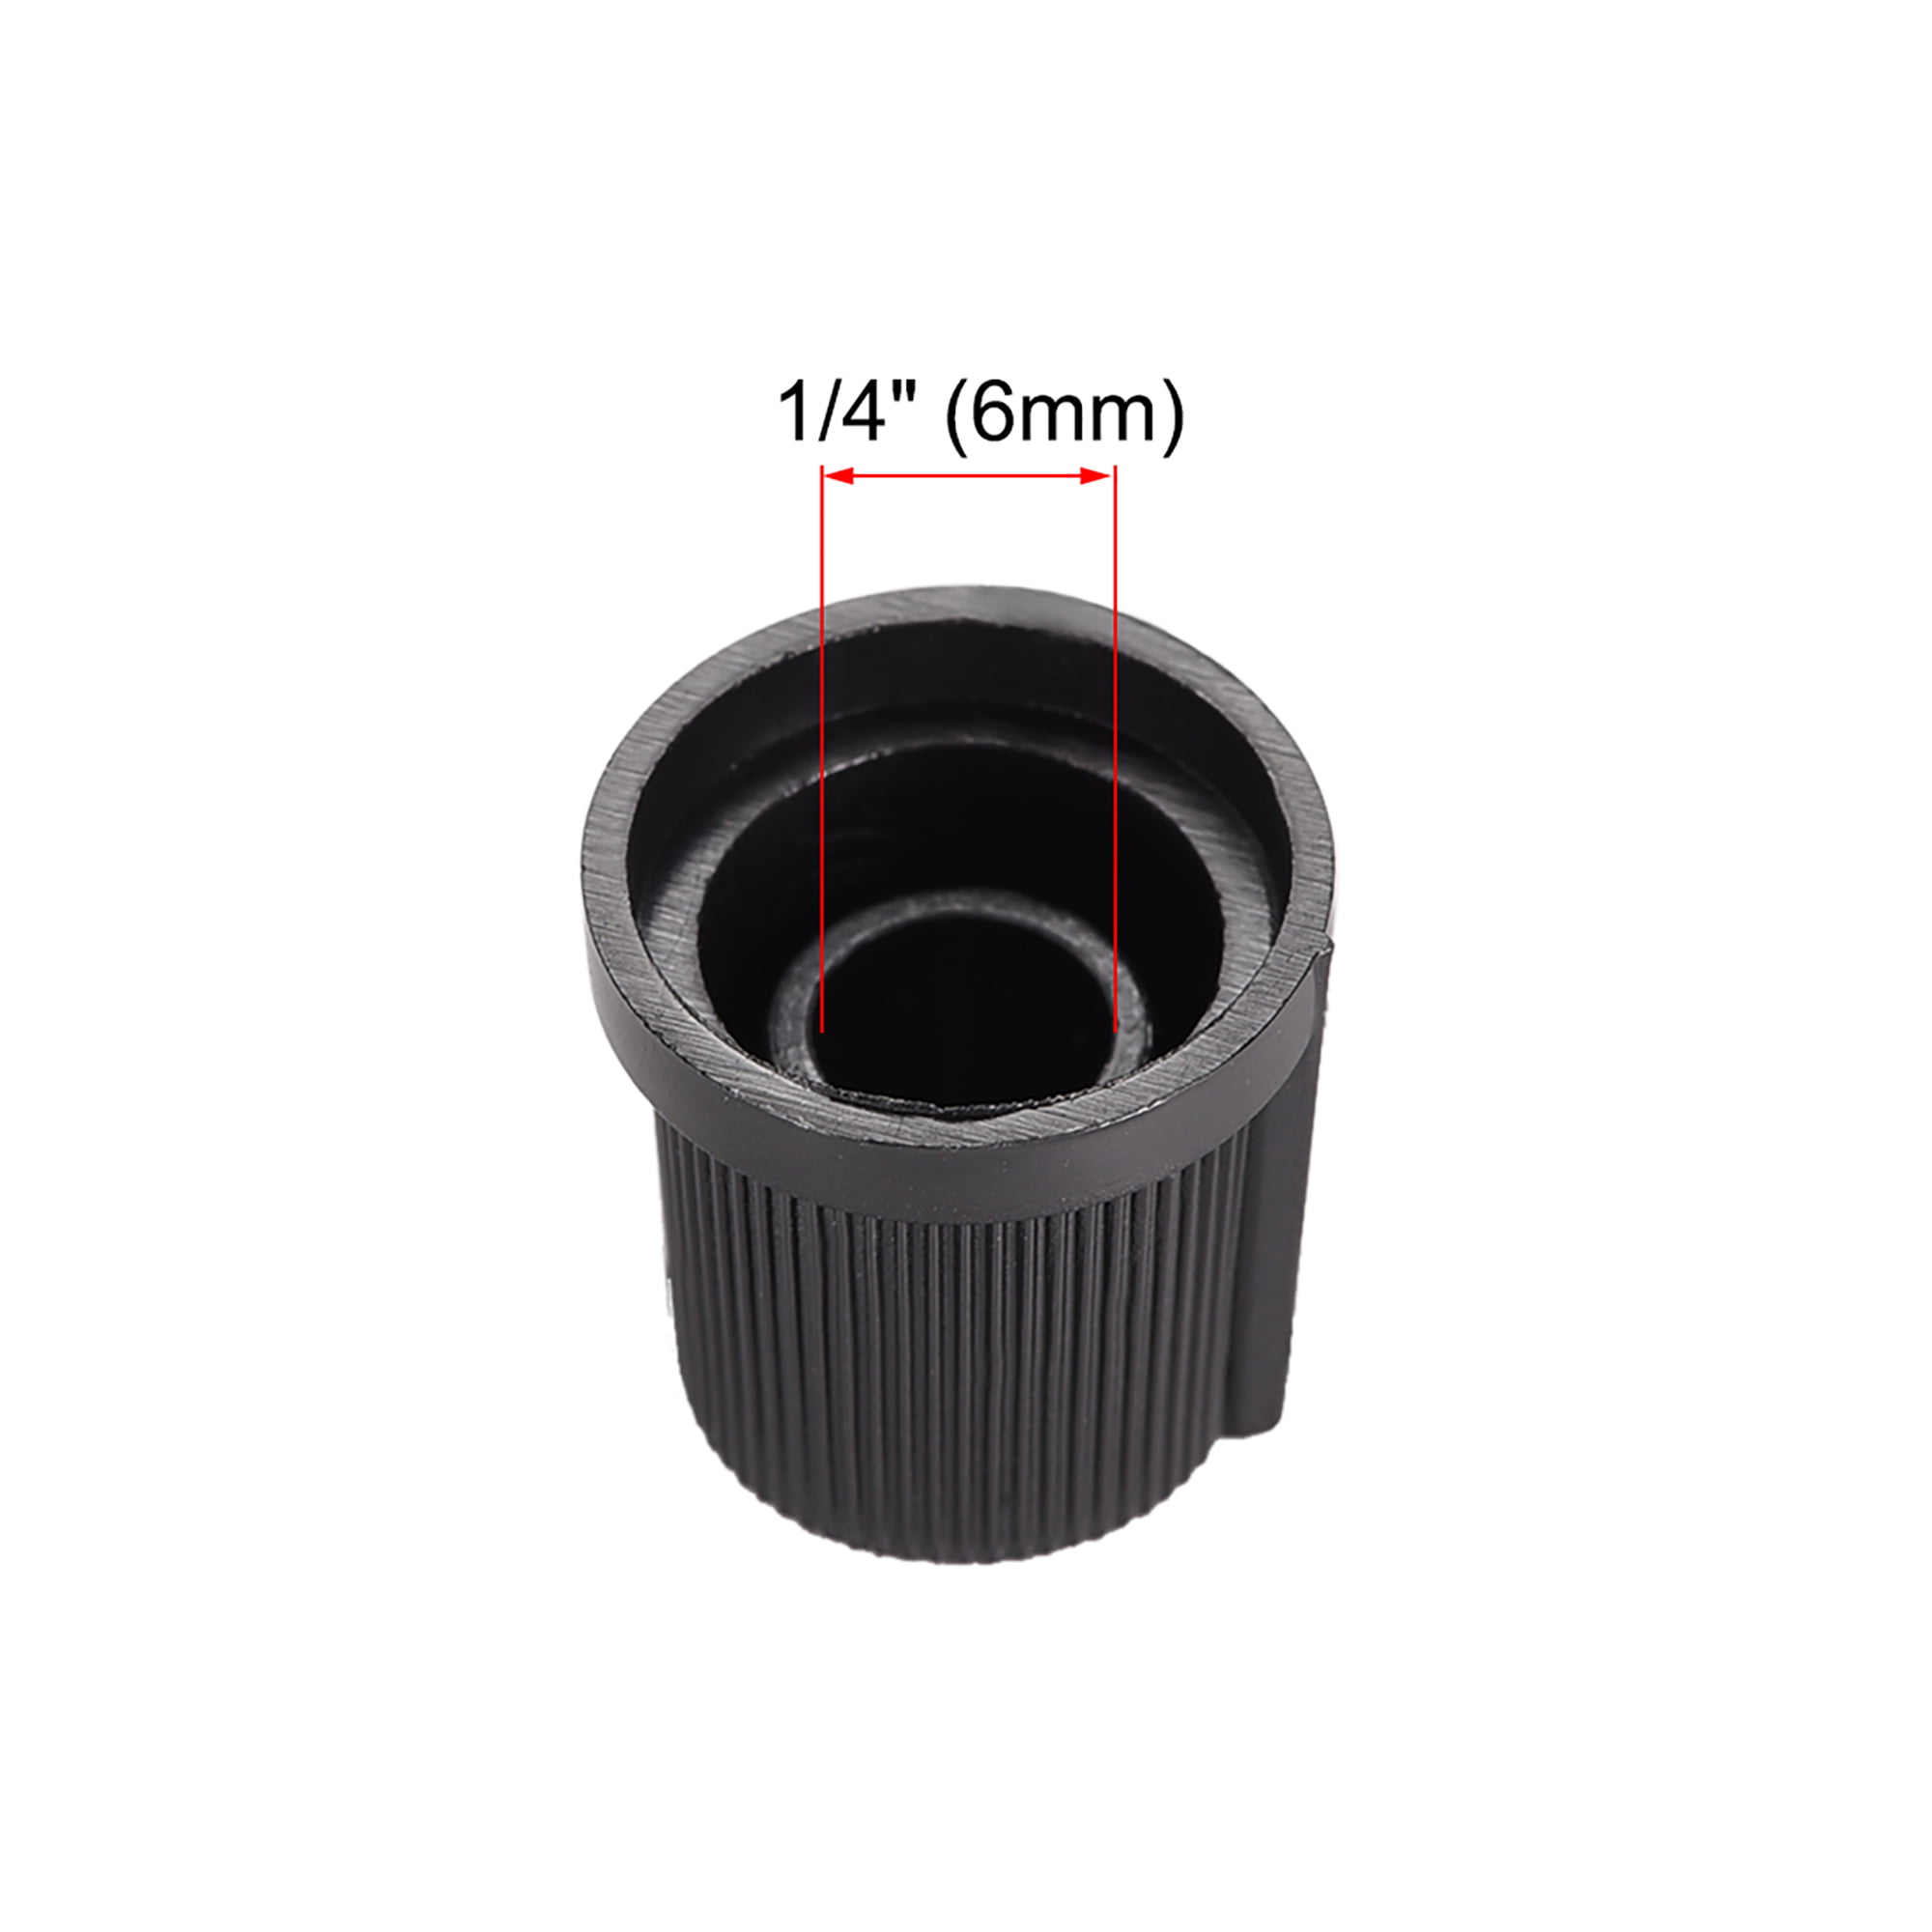 Details about   10Pcs 6mm Knob for Effect Pedal Amplifier Potentiometer Knob Black Orange 